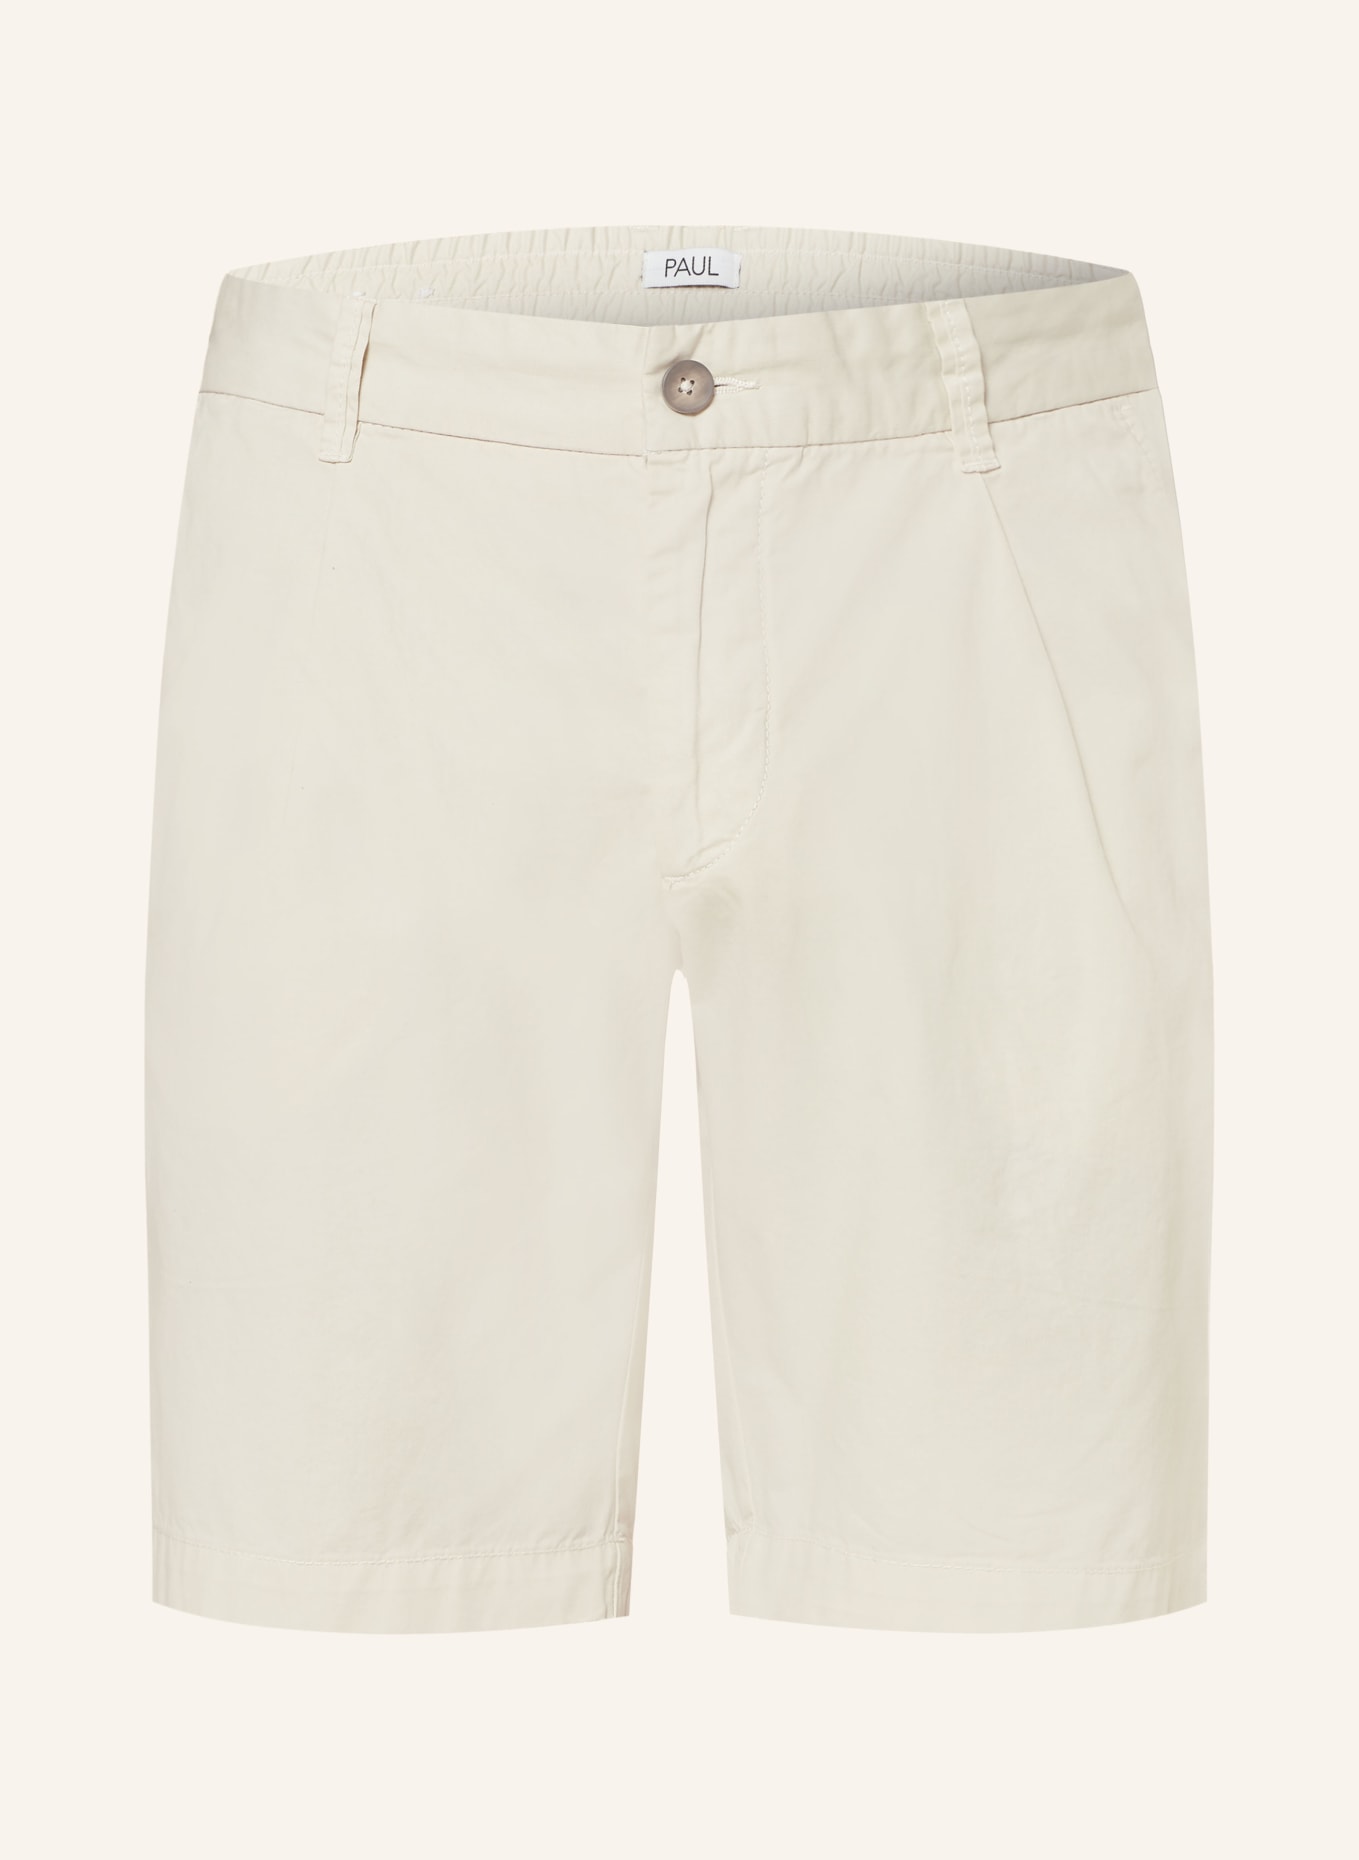 PAUL Shorts comfort fit, Color: ECRU (Image 1)